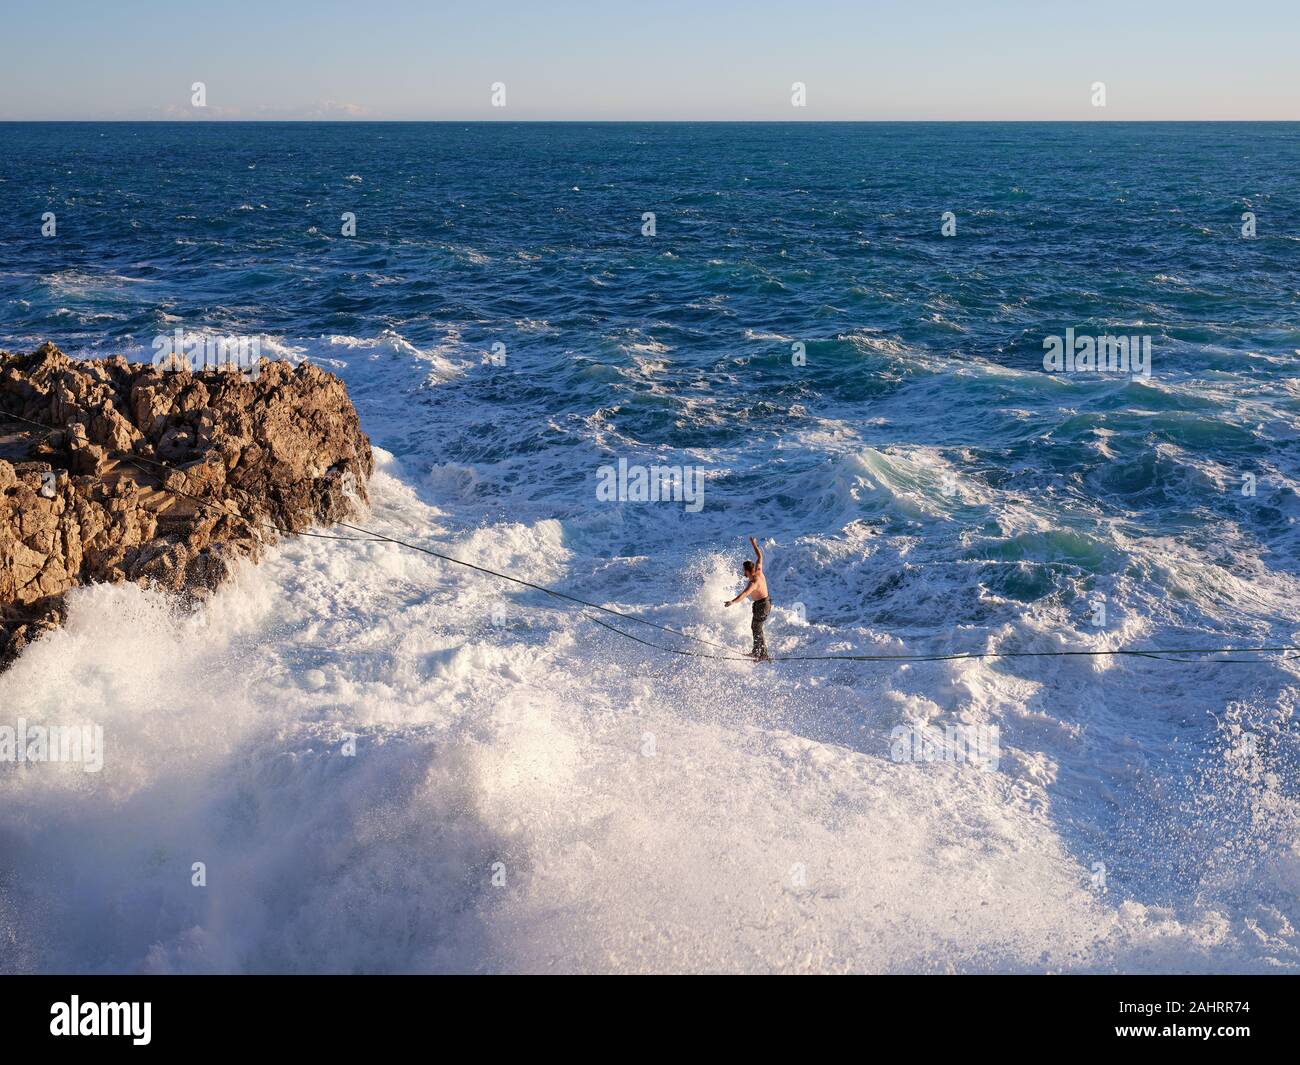 Le jeune homme se détend au-dessus de grandes vagues qui se brisent sur une côte rocheuse. Cap de Nice, Côte d'Azur, Alpes-Maritimes, France. Banque D'Images